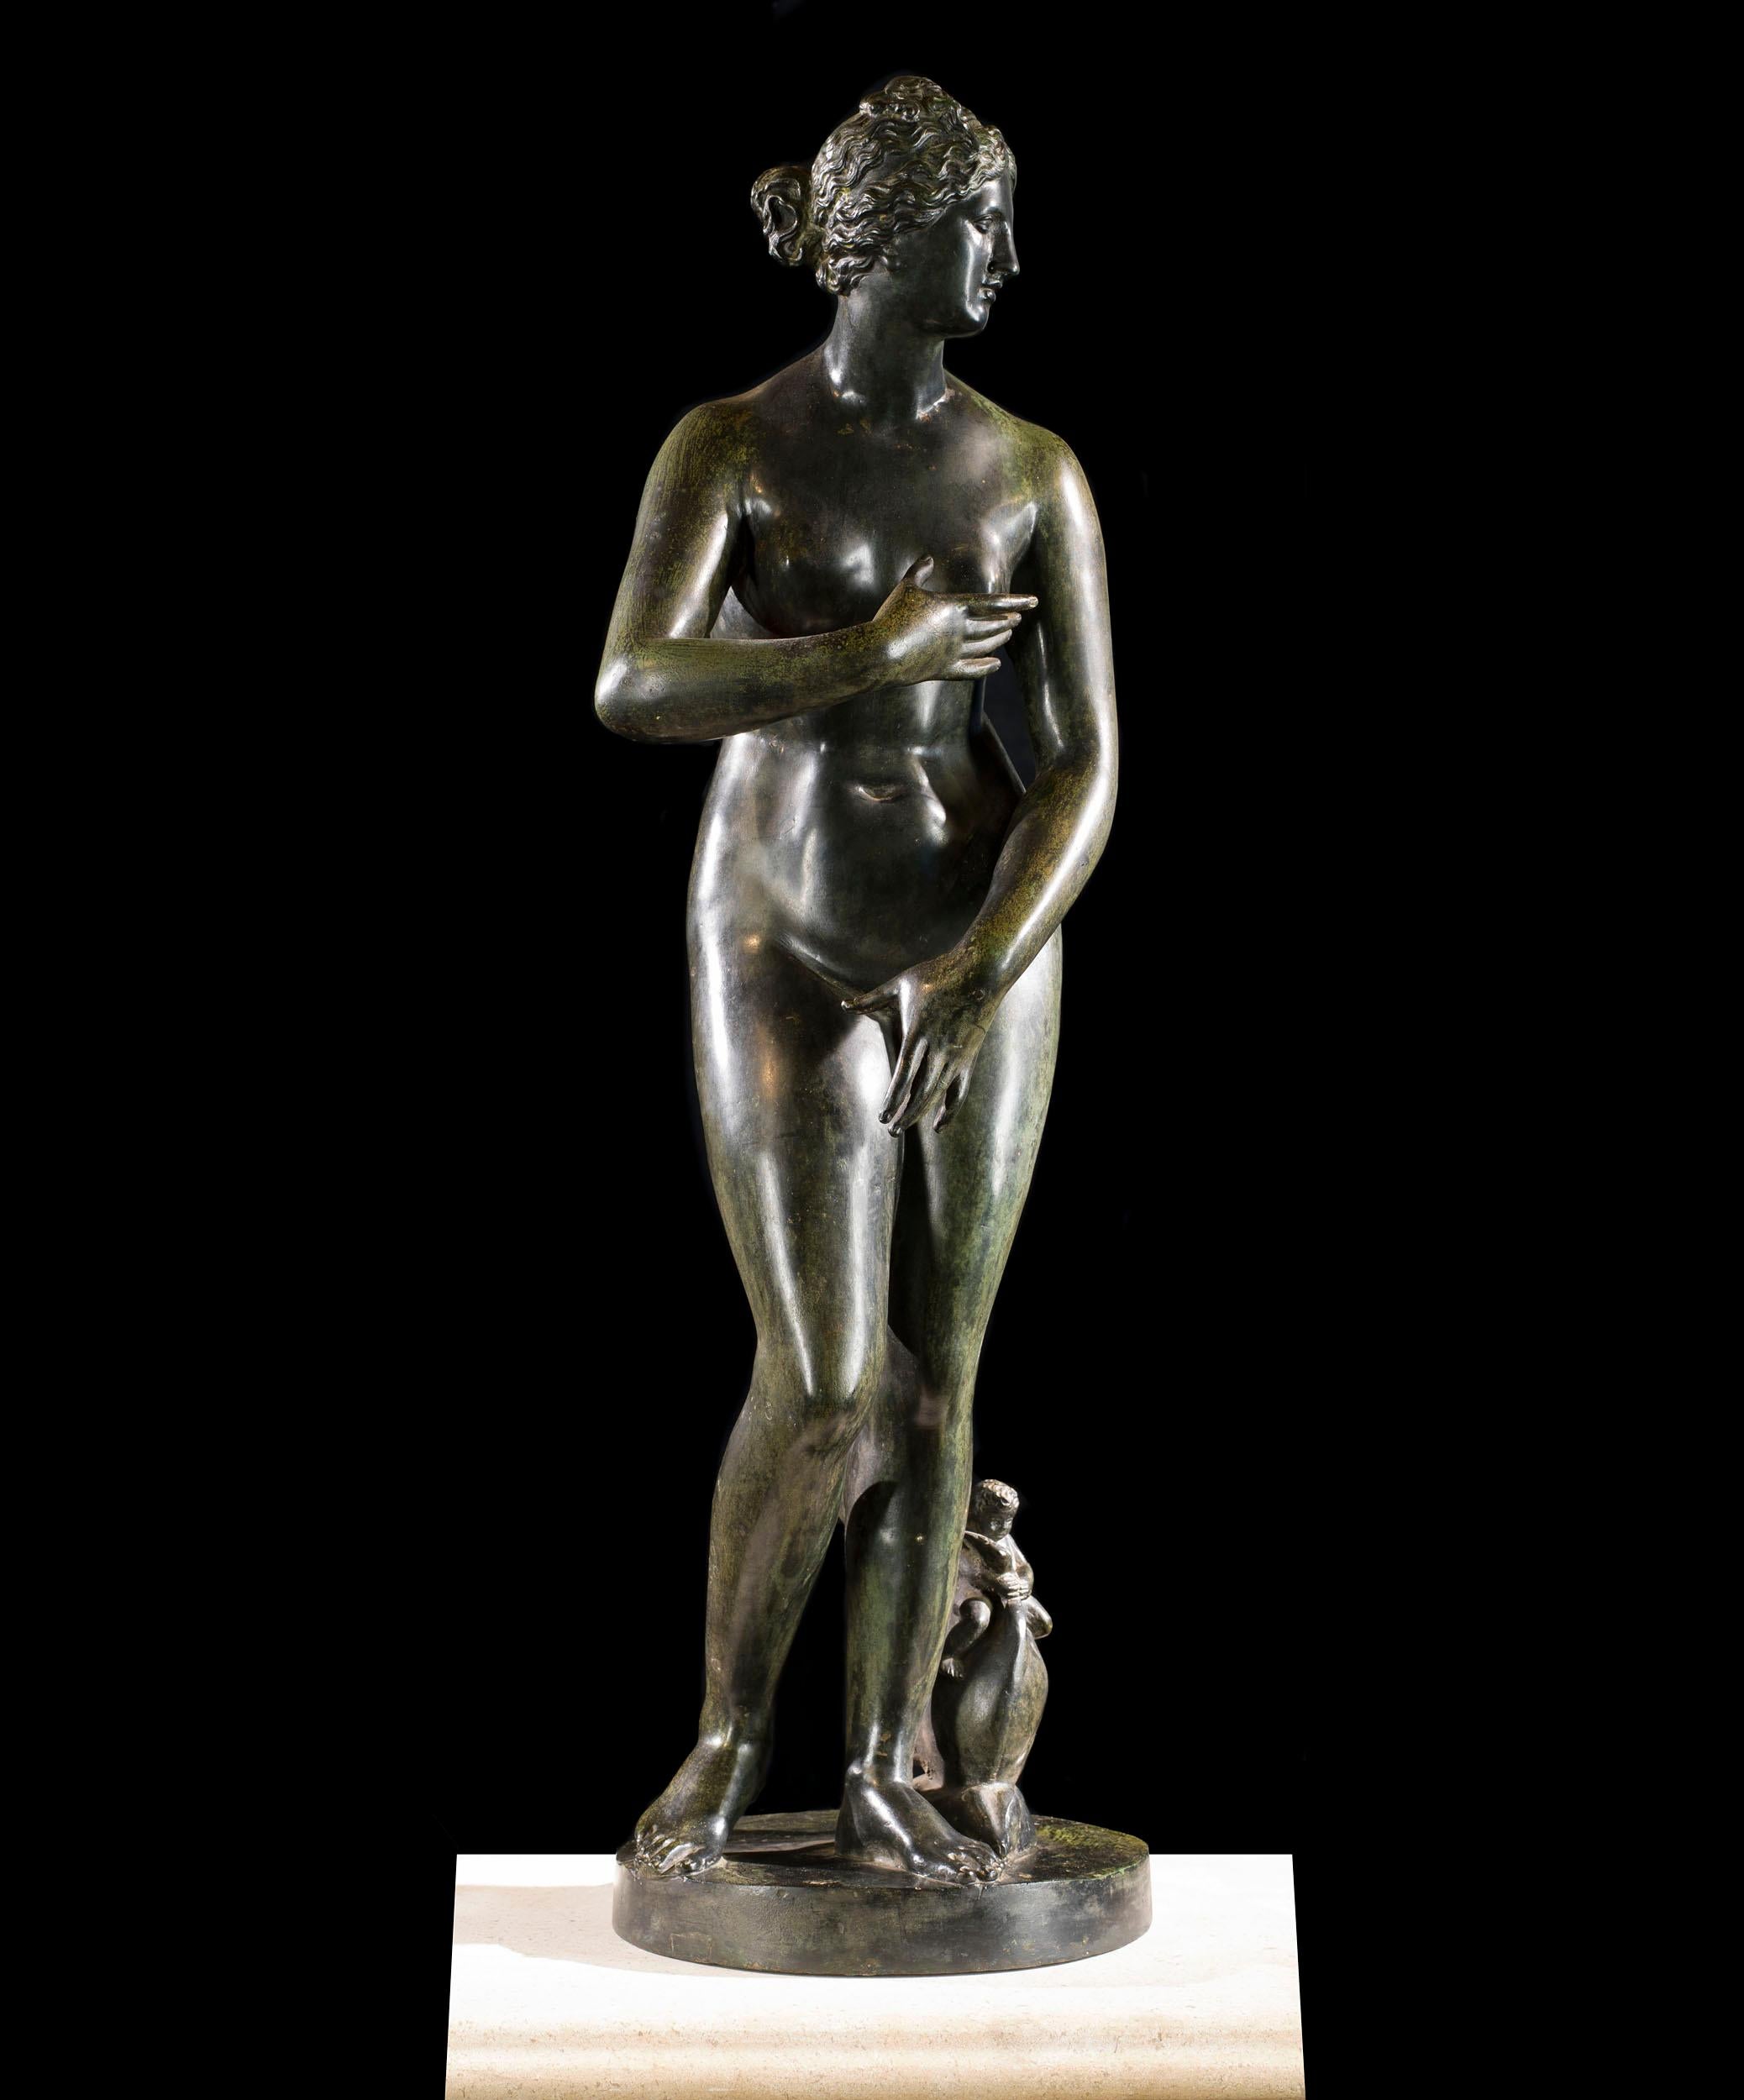 Eine schöne neapolitanische patinierte Bronzefigur der Venus von Medici aus dem späten 19. Jahrhundert nach der Antike. Wahrscheinlich von der Fonderia Sommer, Neapel, gegossen. Die Fonderia Sommer bot drei verschiedene Patinierungsarten für ihre